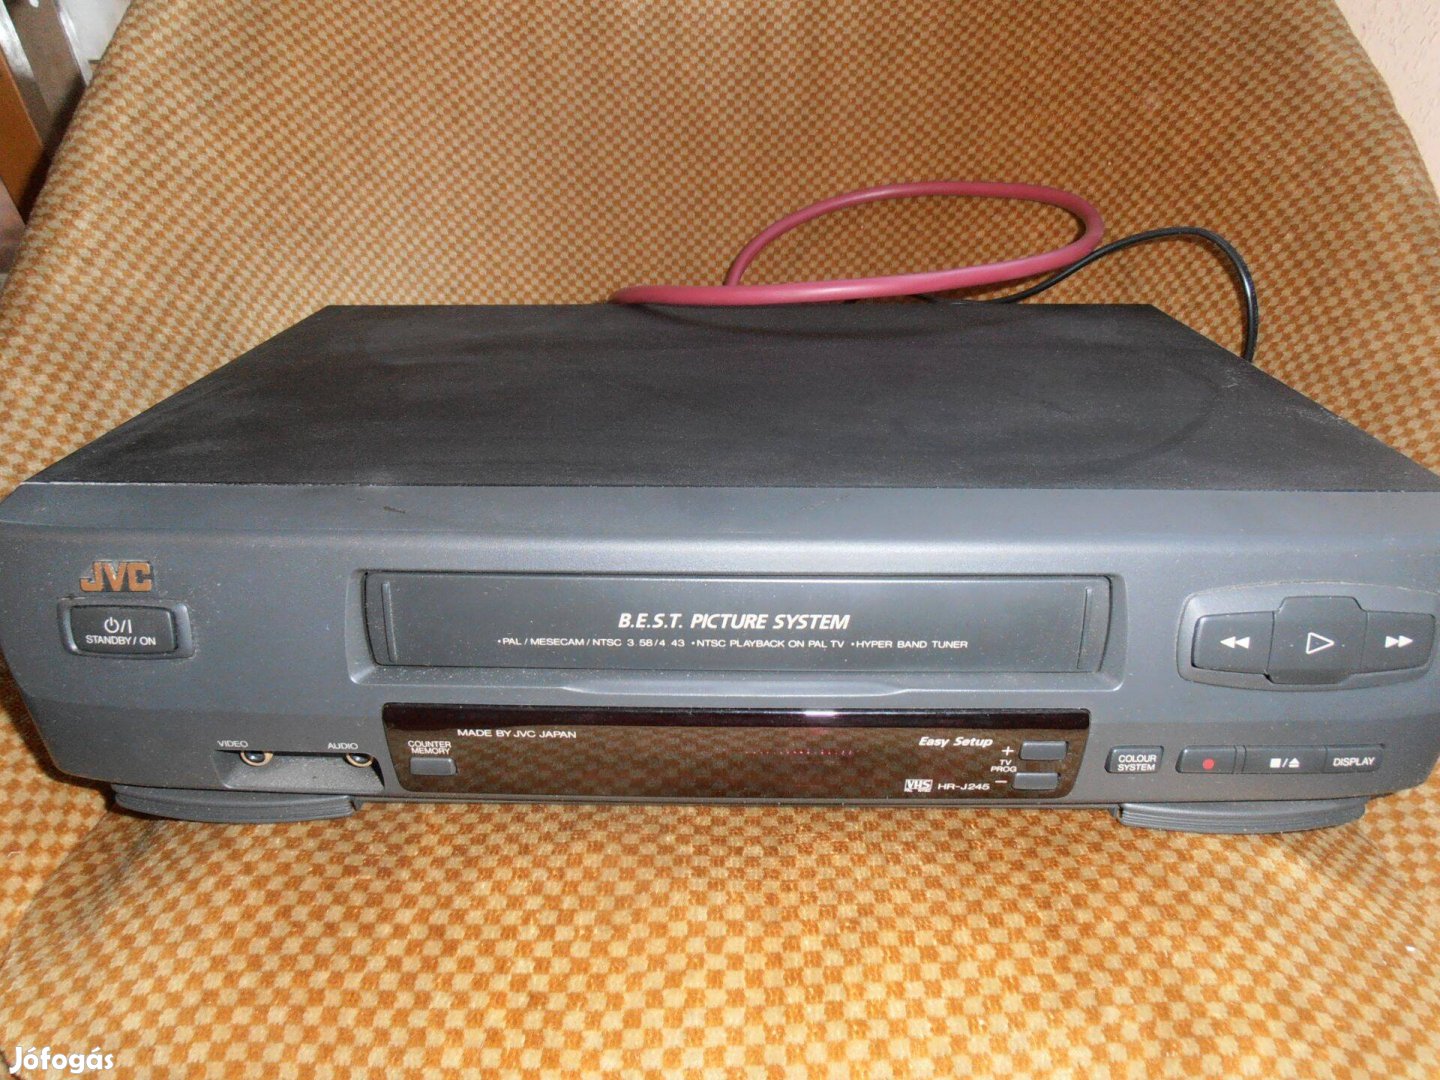 2 fejes hibátlan JVC VHS video távirányiró nélkül 15.000Ft-ért ujpeste